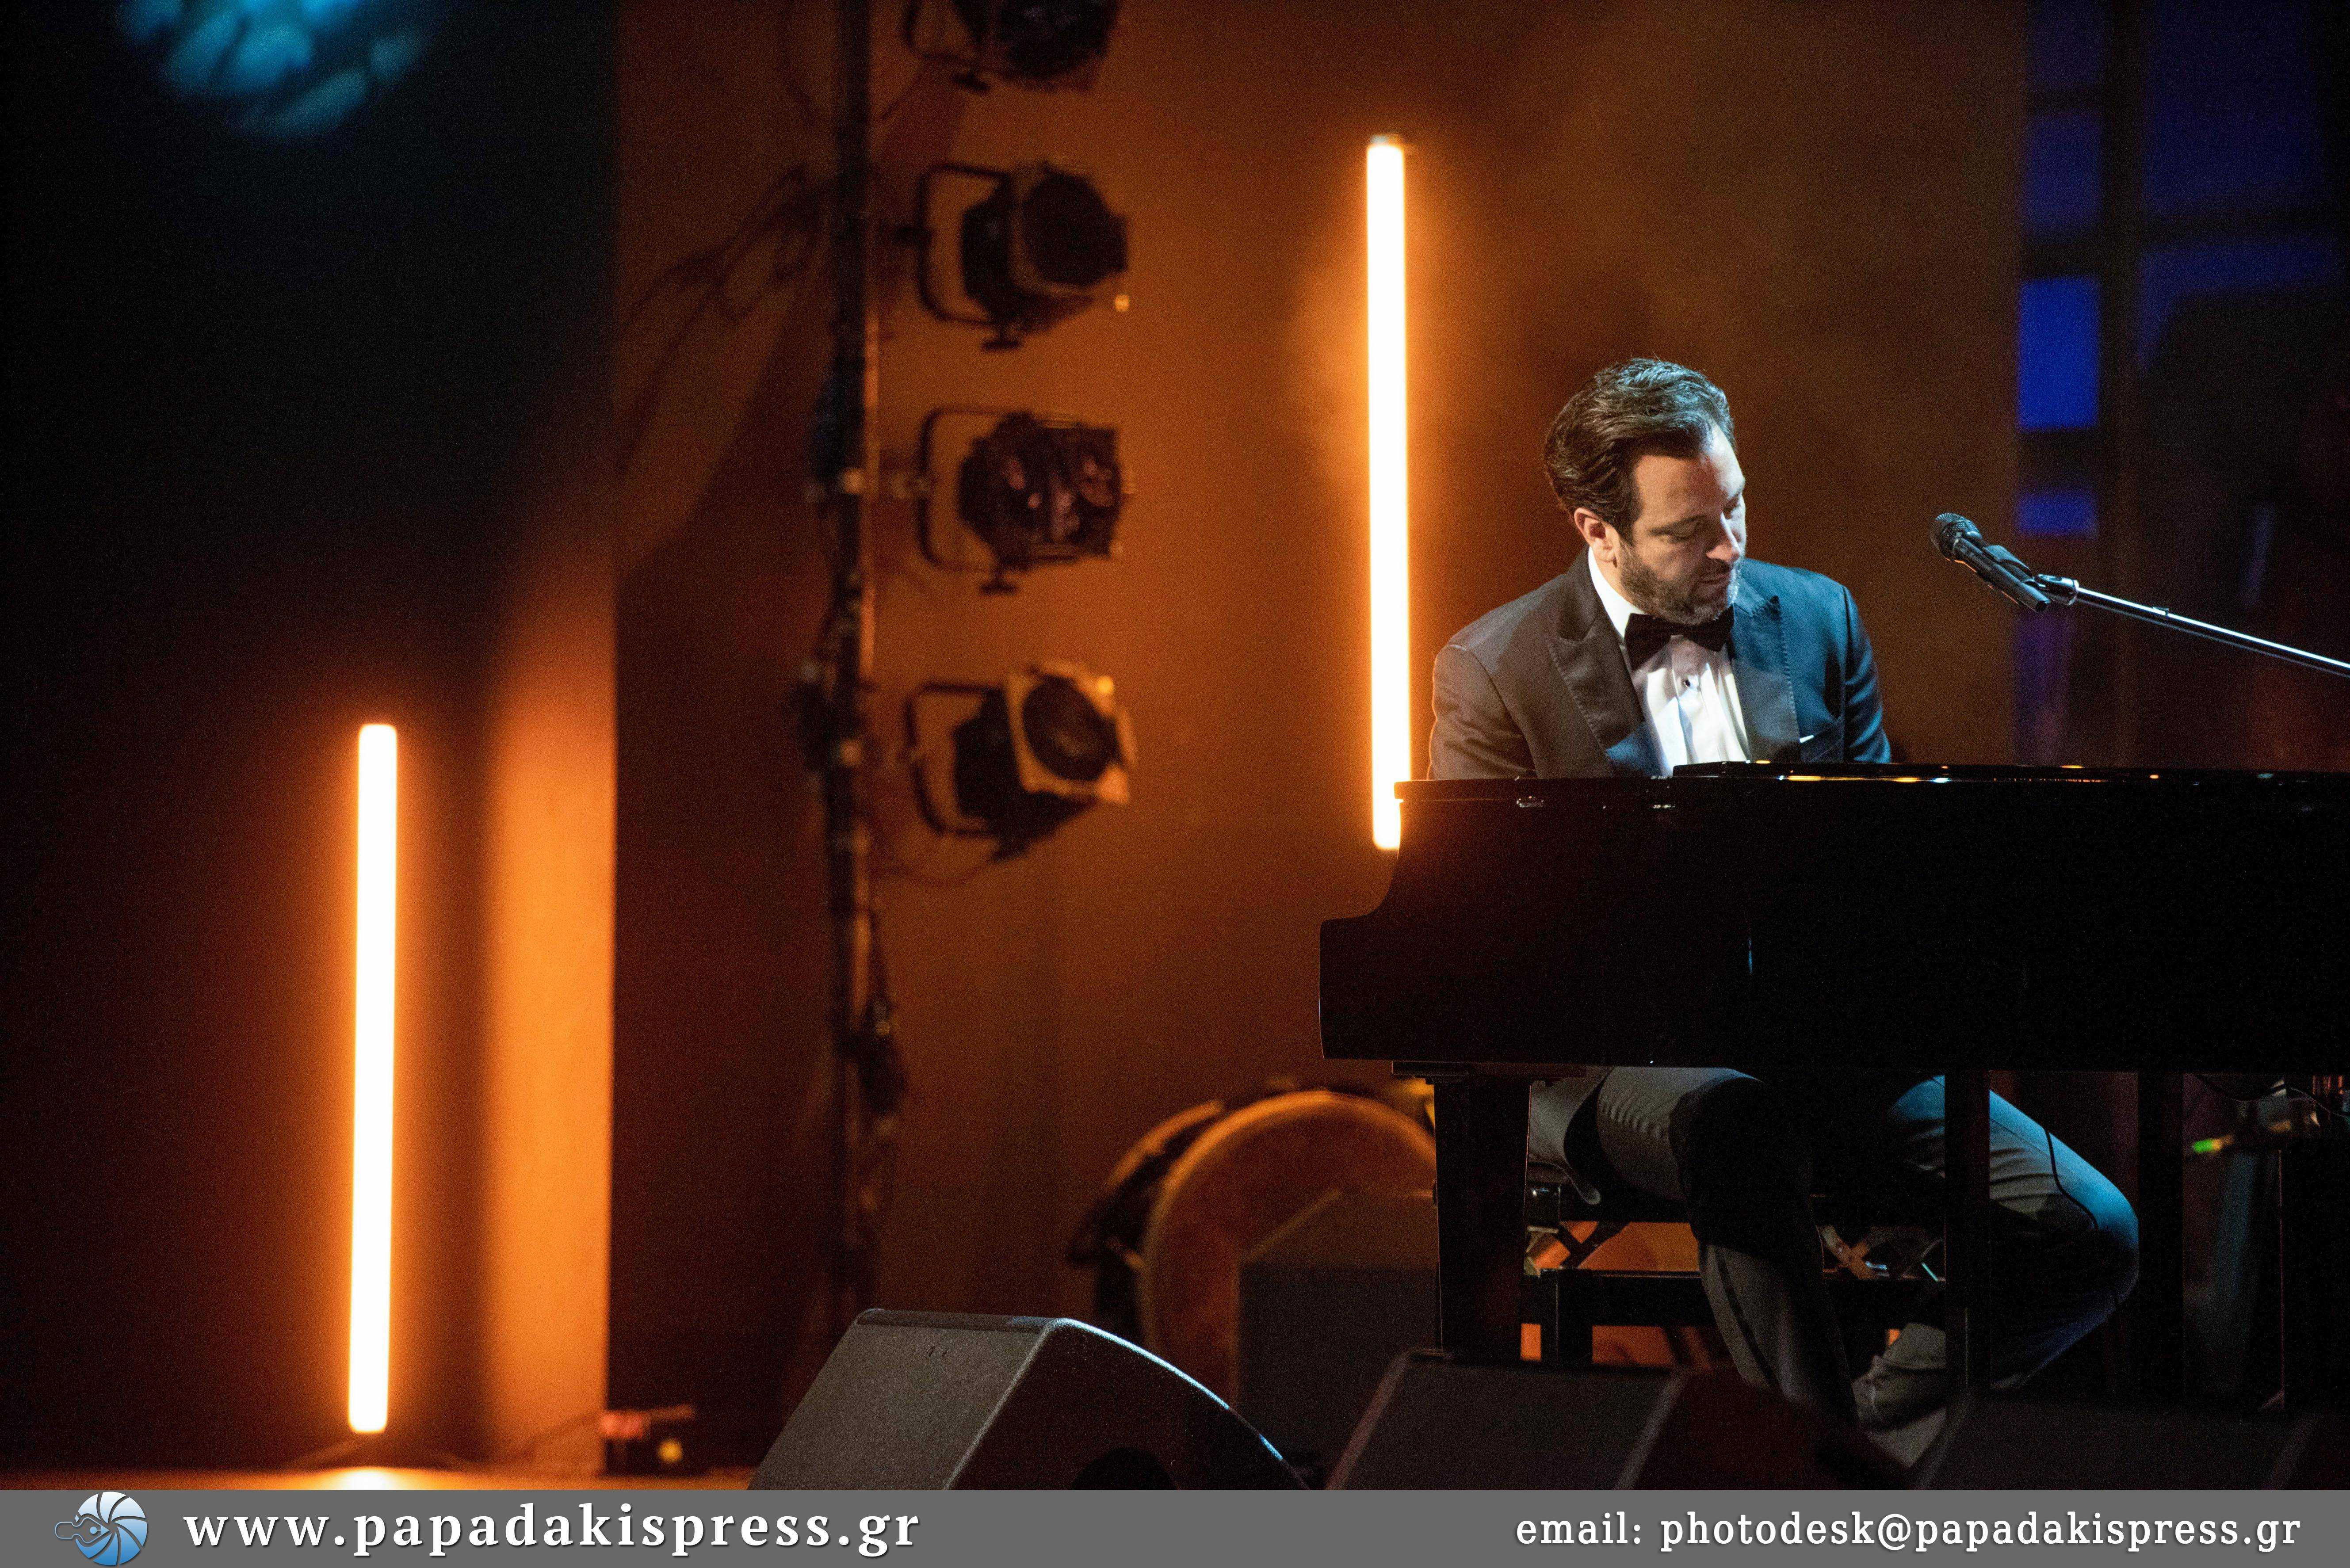 Ο Guy Manoukian, ο διάσημος Λιβανέζος-Αρμένιος συνθέτης και πιανίστας, εμφανίστηκε στο Θέατρο Παλλάς δίνοντας μια μοναδική συναυλία που ενθουσίασε το κοινό, μαζί με τους Gipsy Kings by André Reyes. 